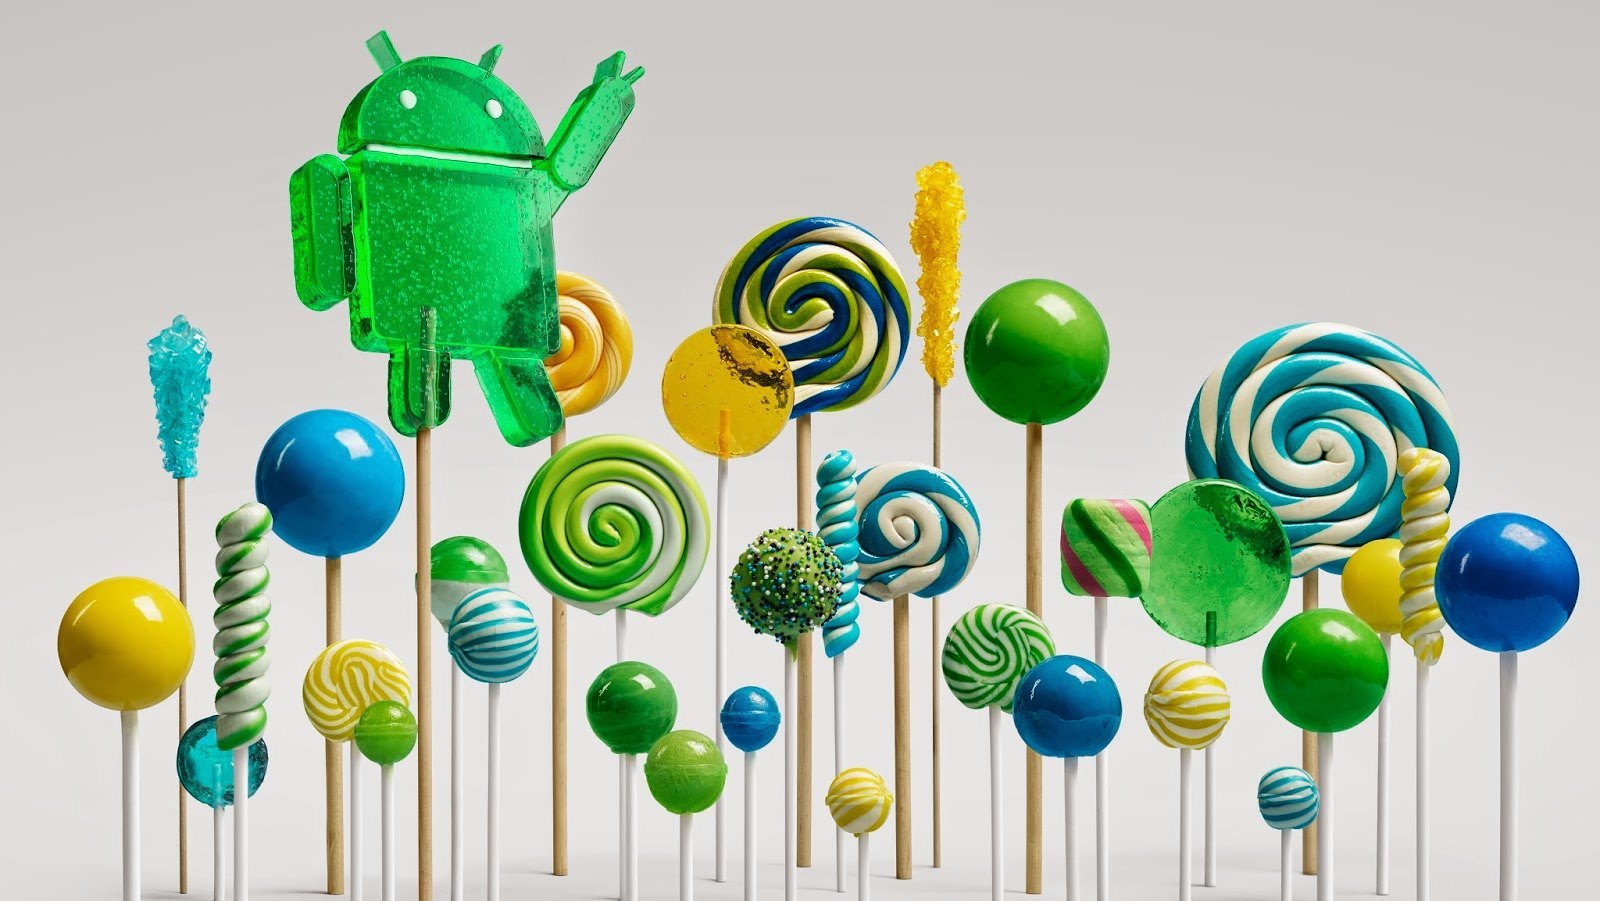 Nexus 4 to get Android Lollipop